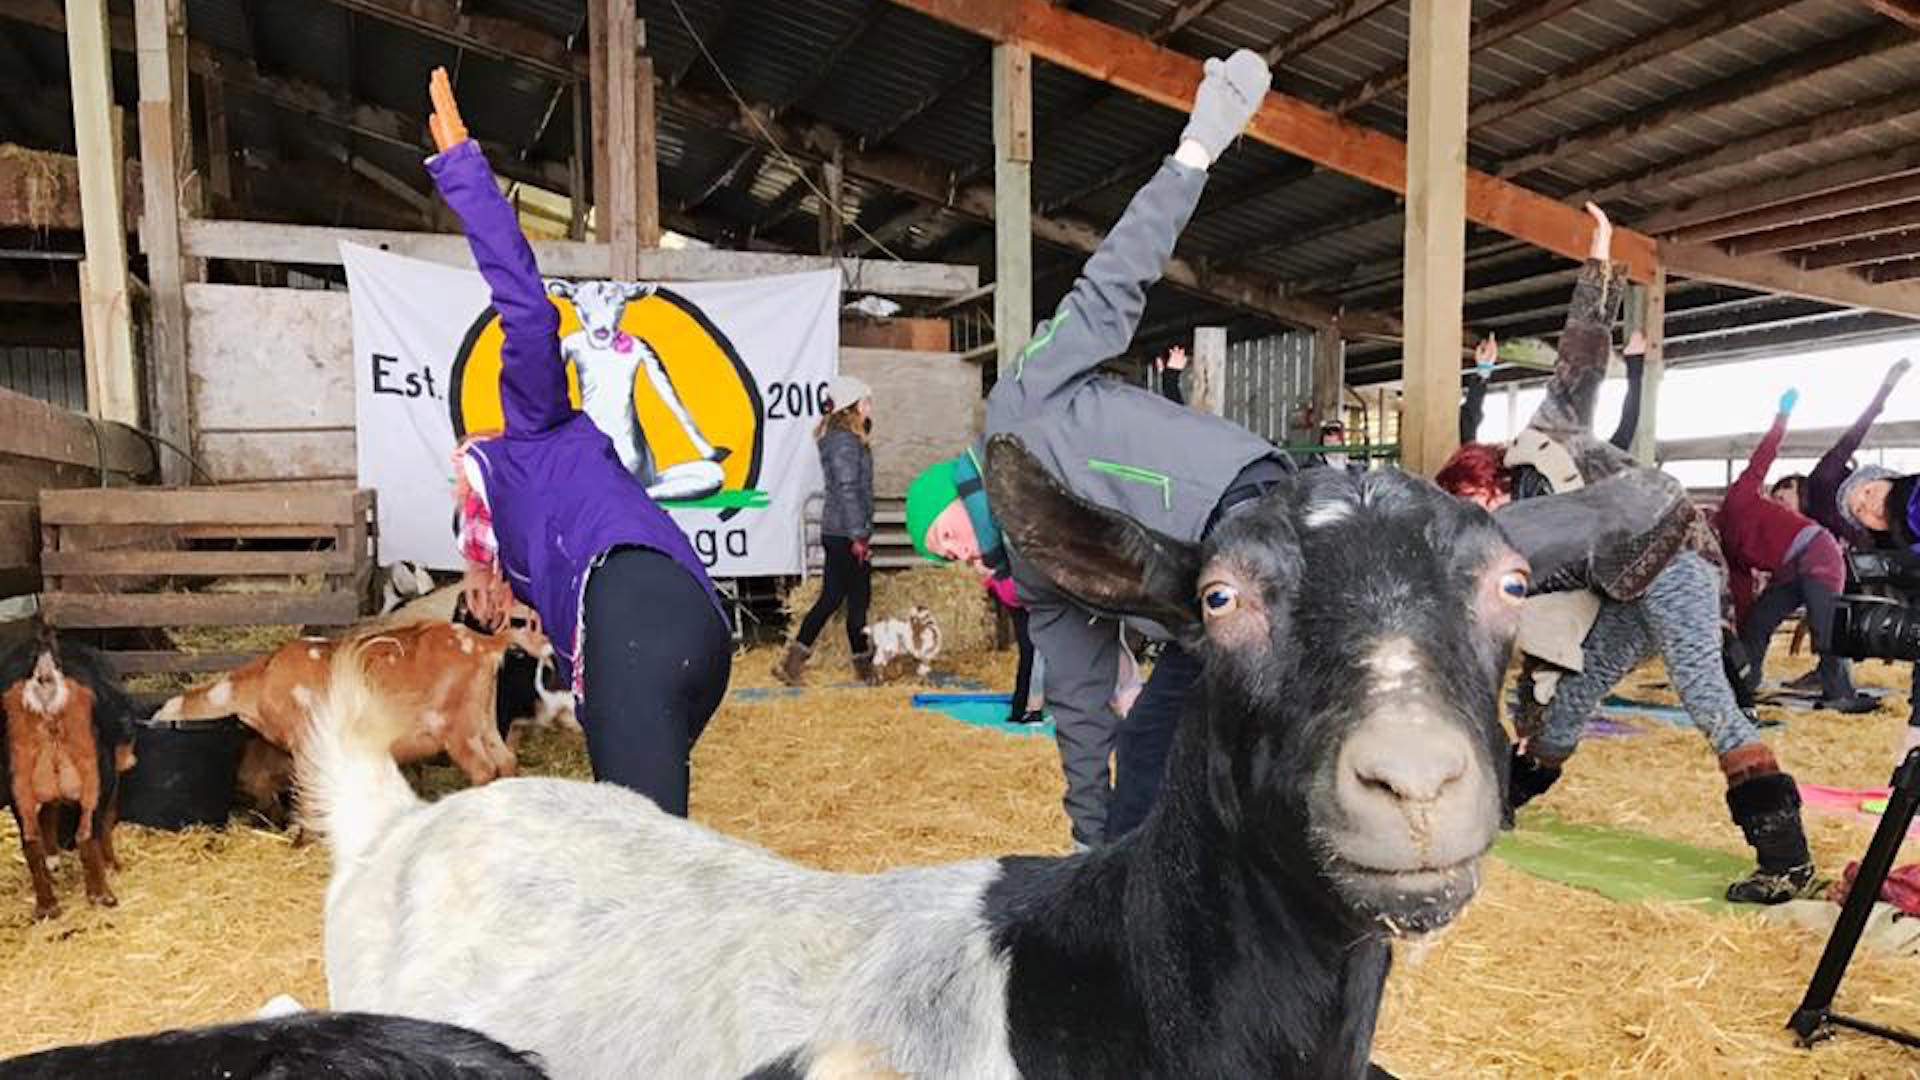 Goat yoga craze: Oregon yoga business goes viral - Fort Worth Business Press